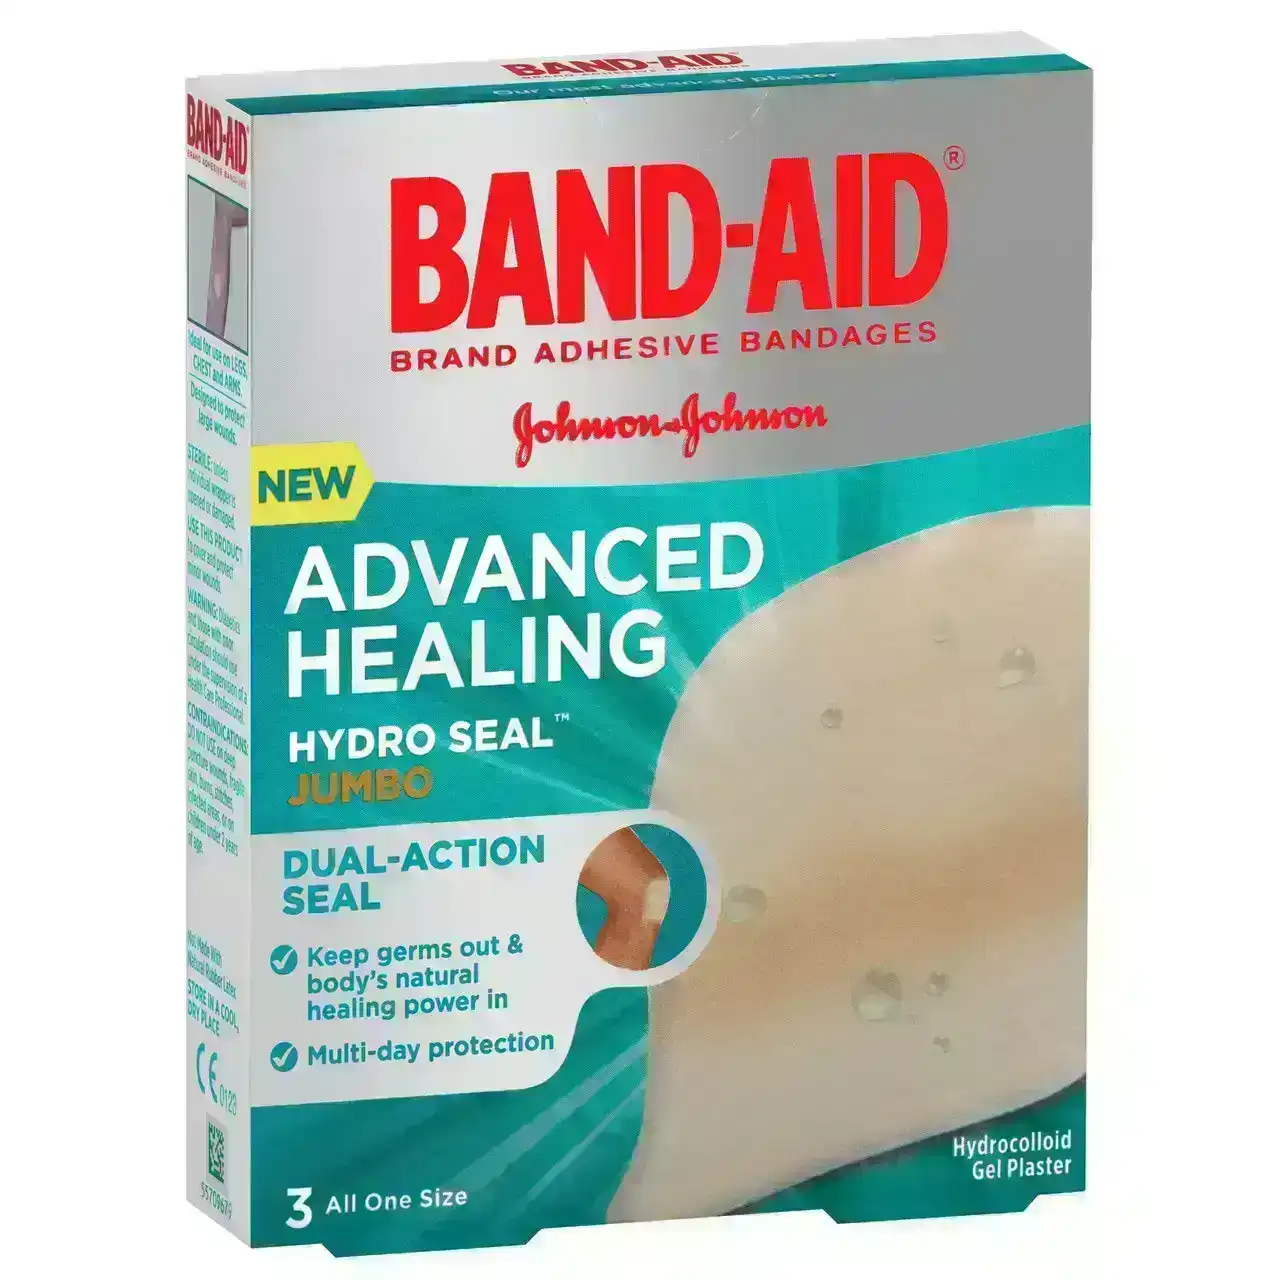 BAND-AID Advanced Healing Hydro Seal Jumbo 3 Pack